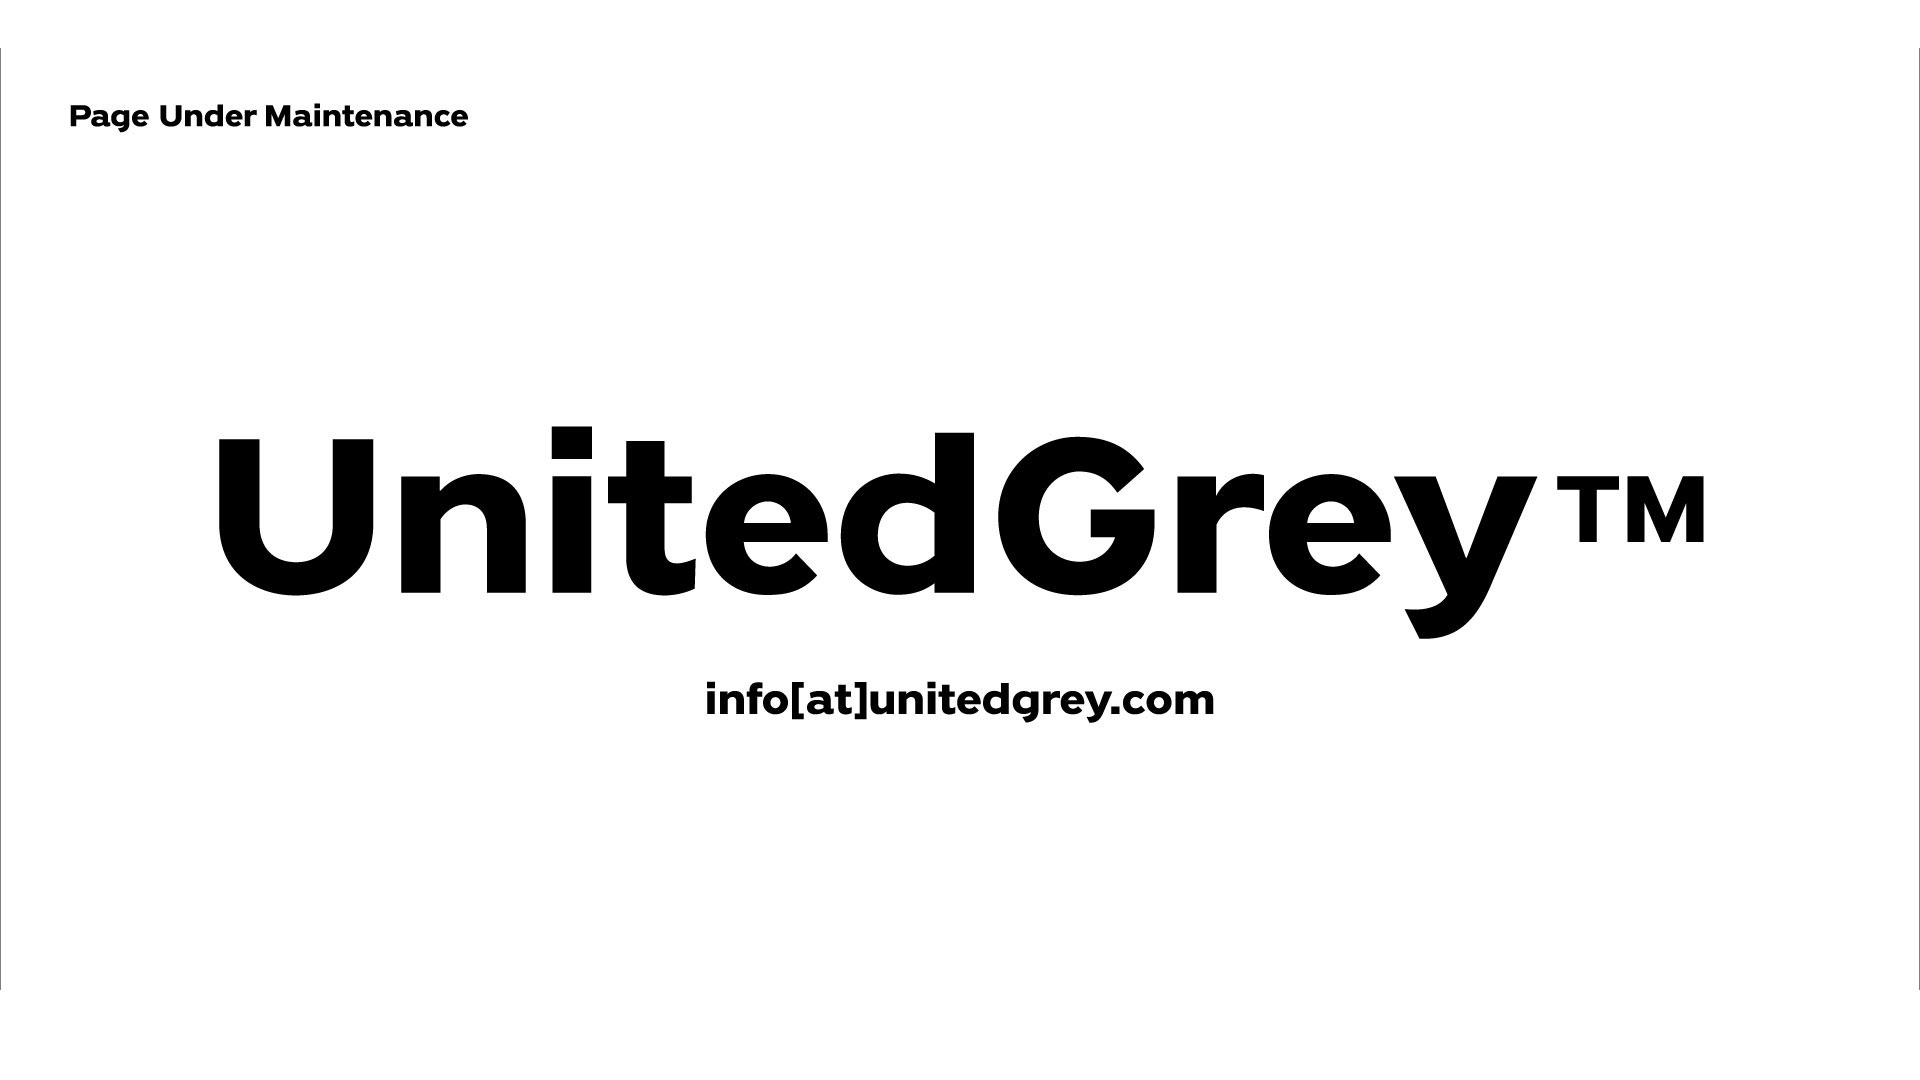 UnitedGrey